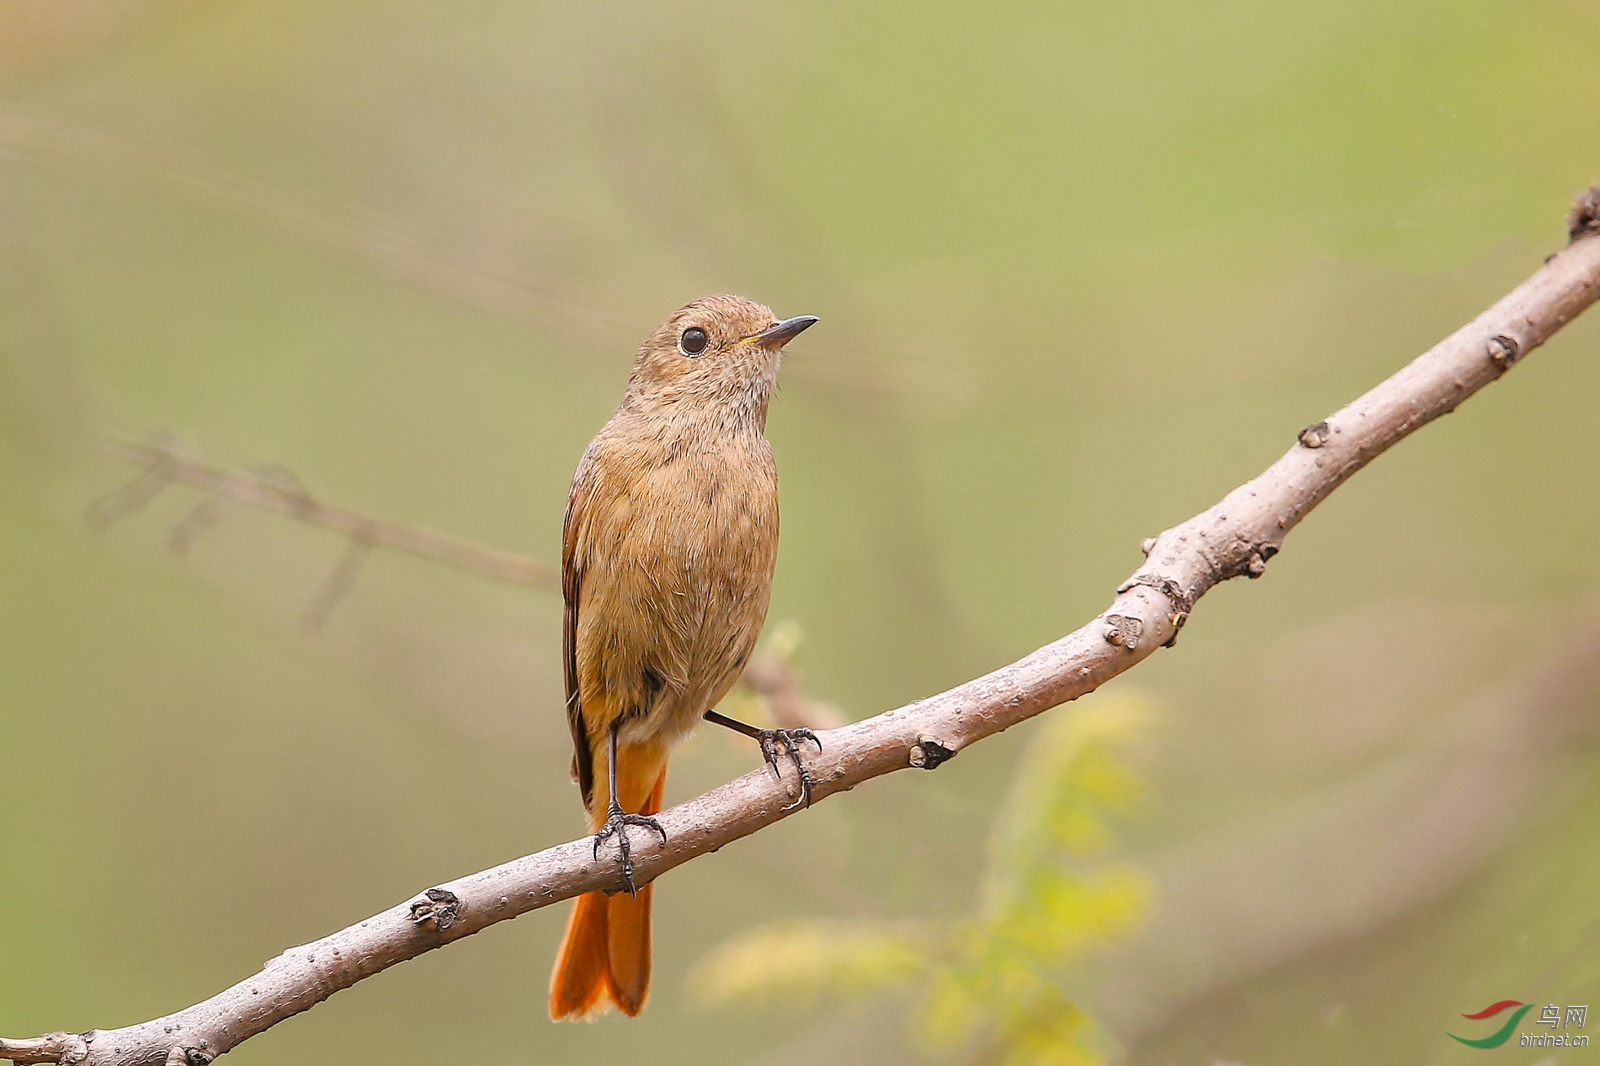 华北,华中至西南一带的夏候鸟,越冬于长江以南,一般性常见鸟